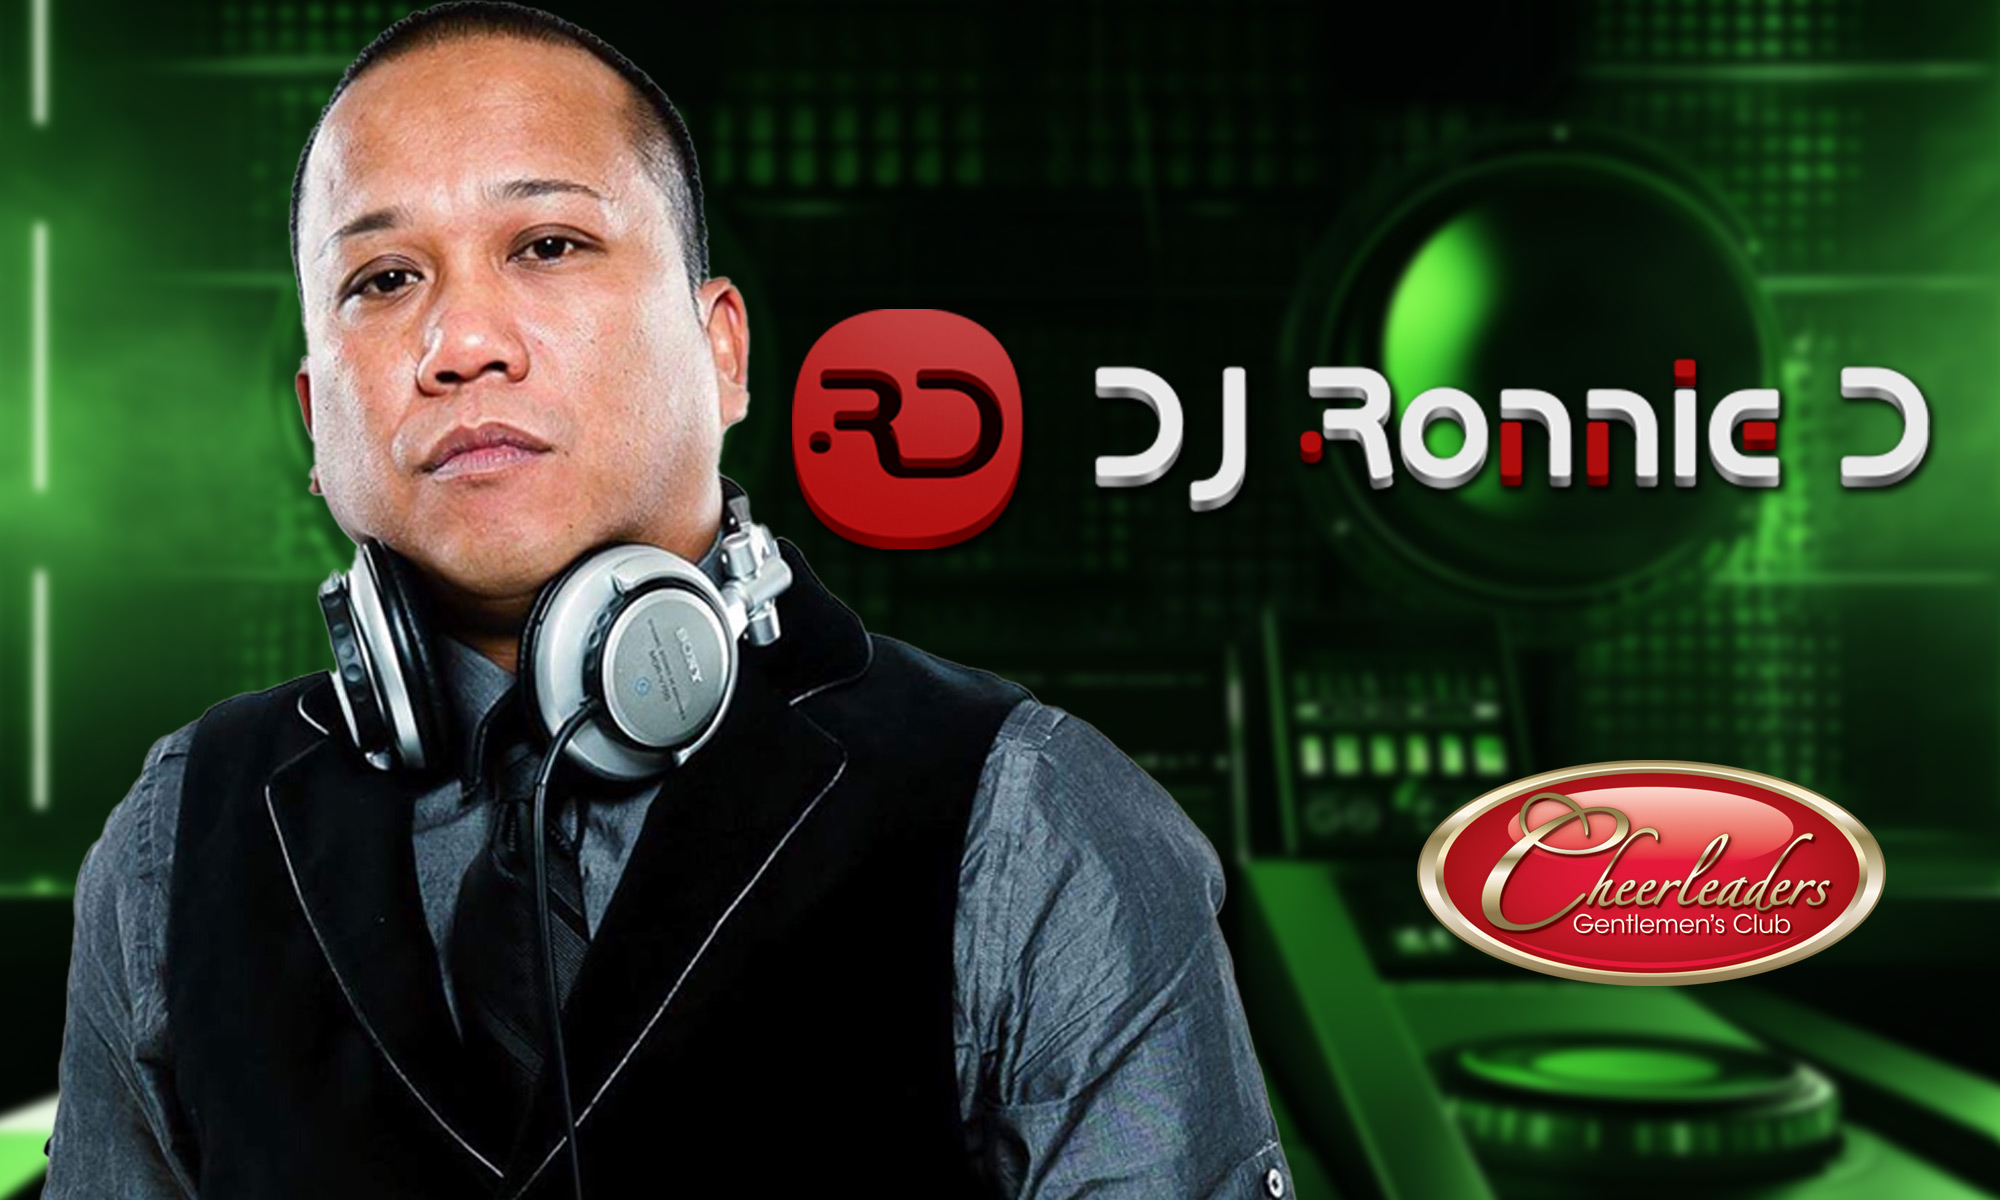 DJ Ronnie D